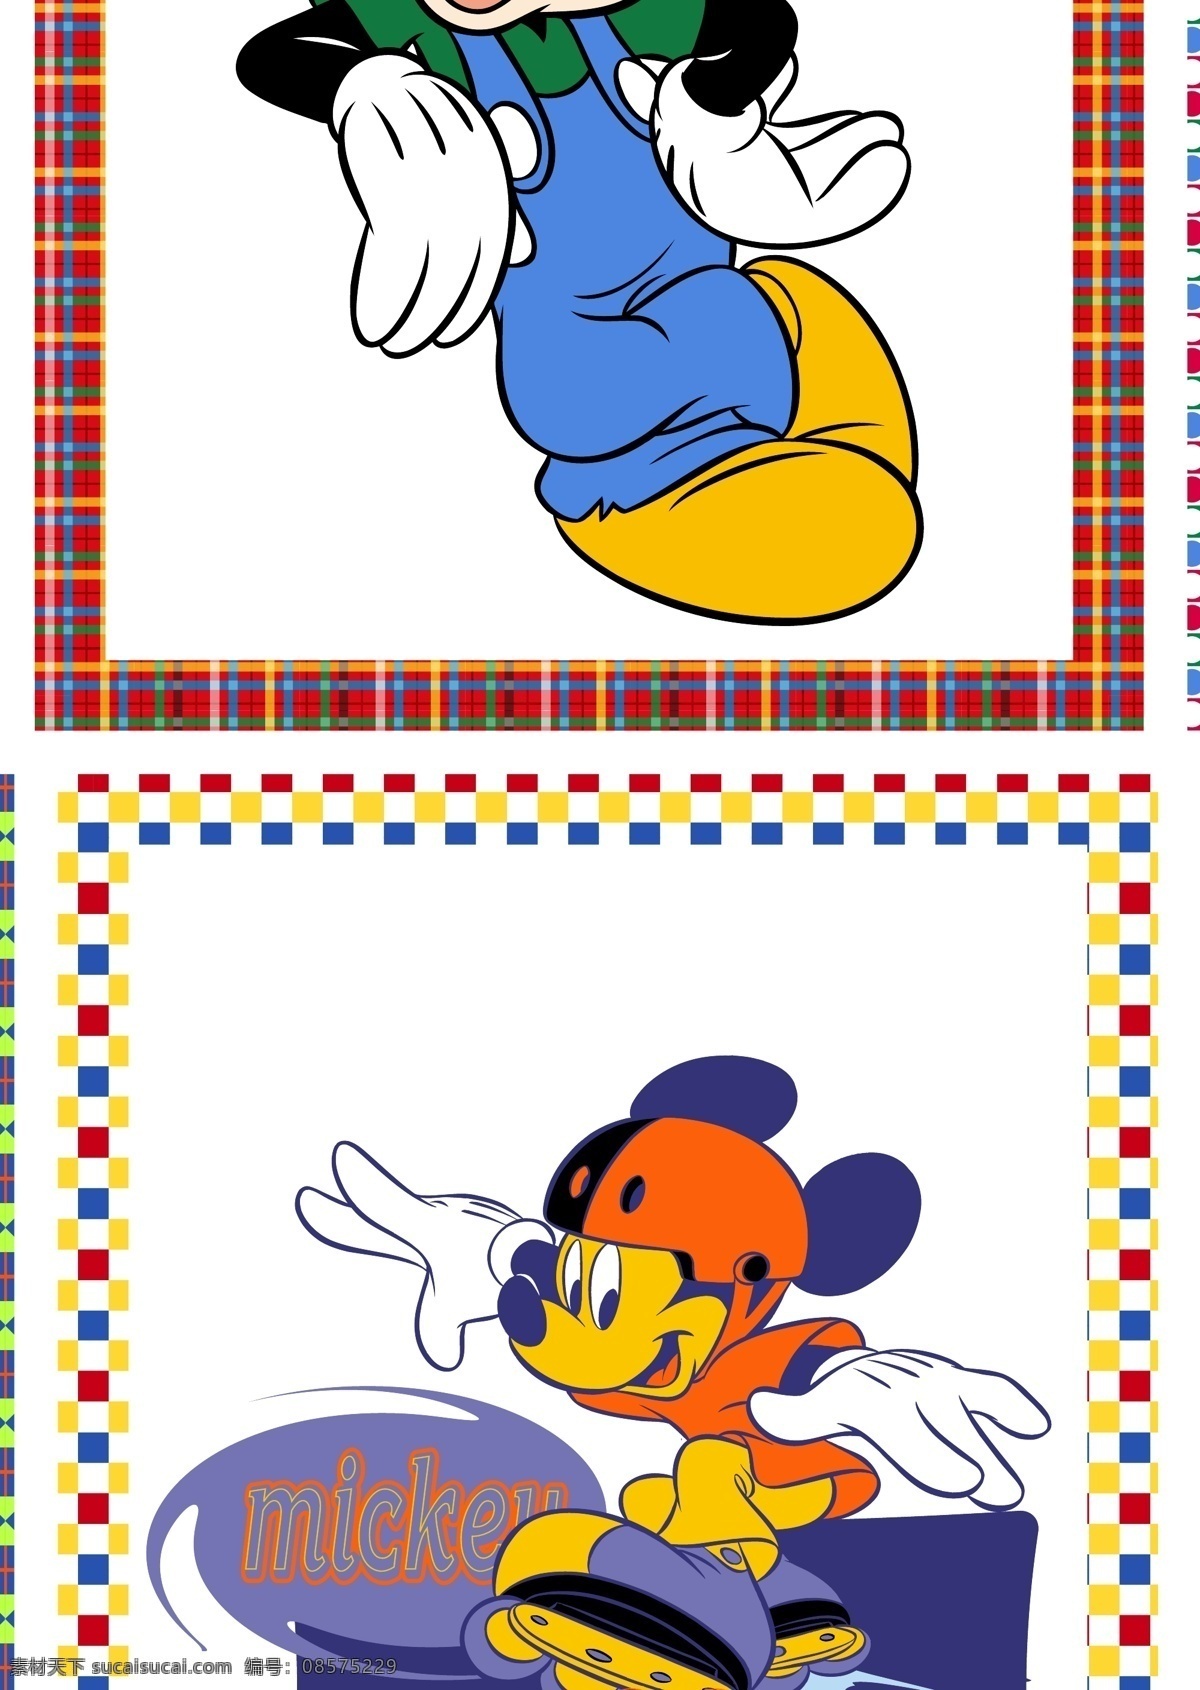 米老鼠 卡通 卡通人物 经典卡通 迪士尼 米奇 高飞 米妮 照片 相框 卡通鼠 矢量 老鼠 其他设计 其他人物 矢量人物